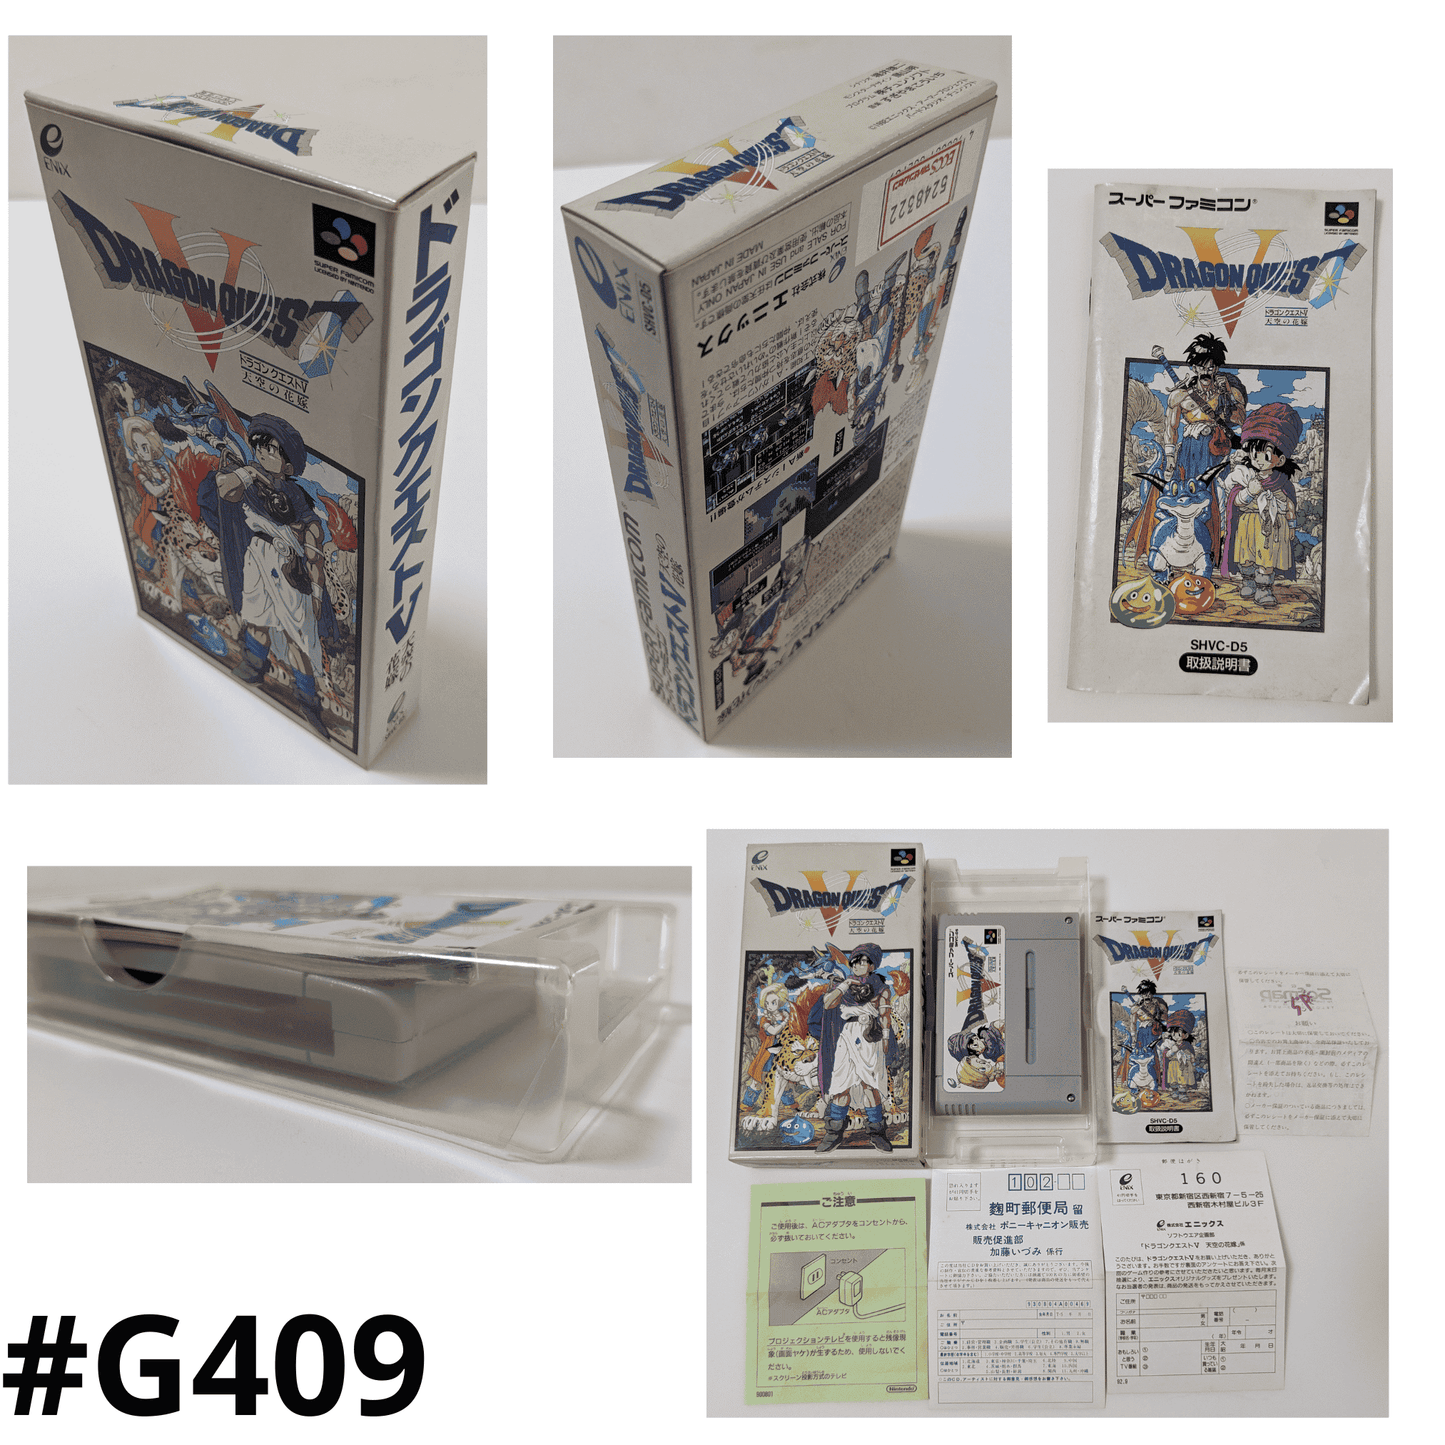 Dragon Quest V | Super Famicom ChitoroShop